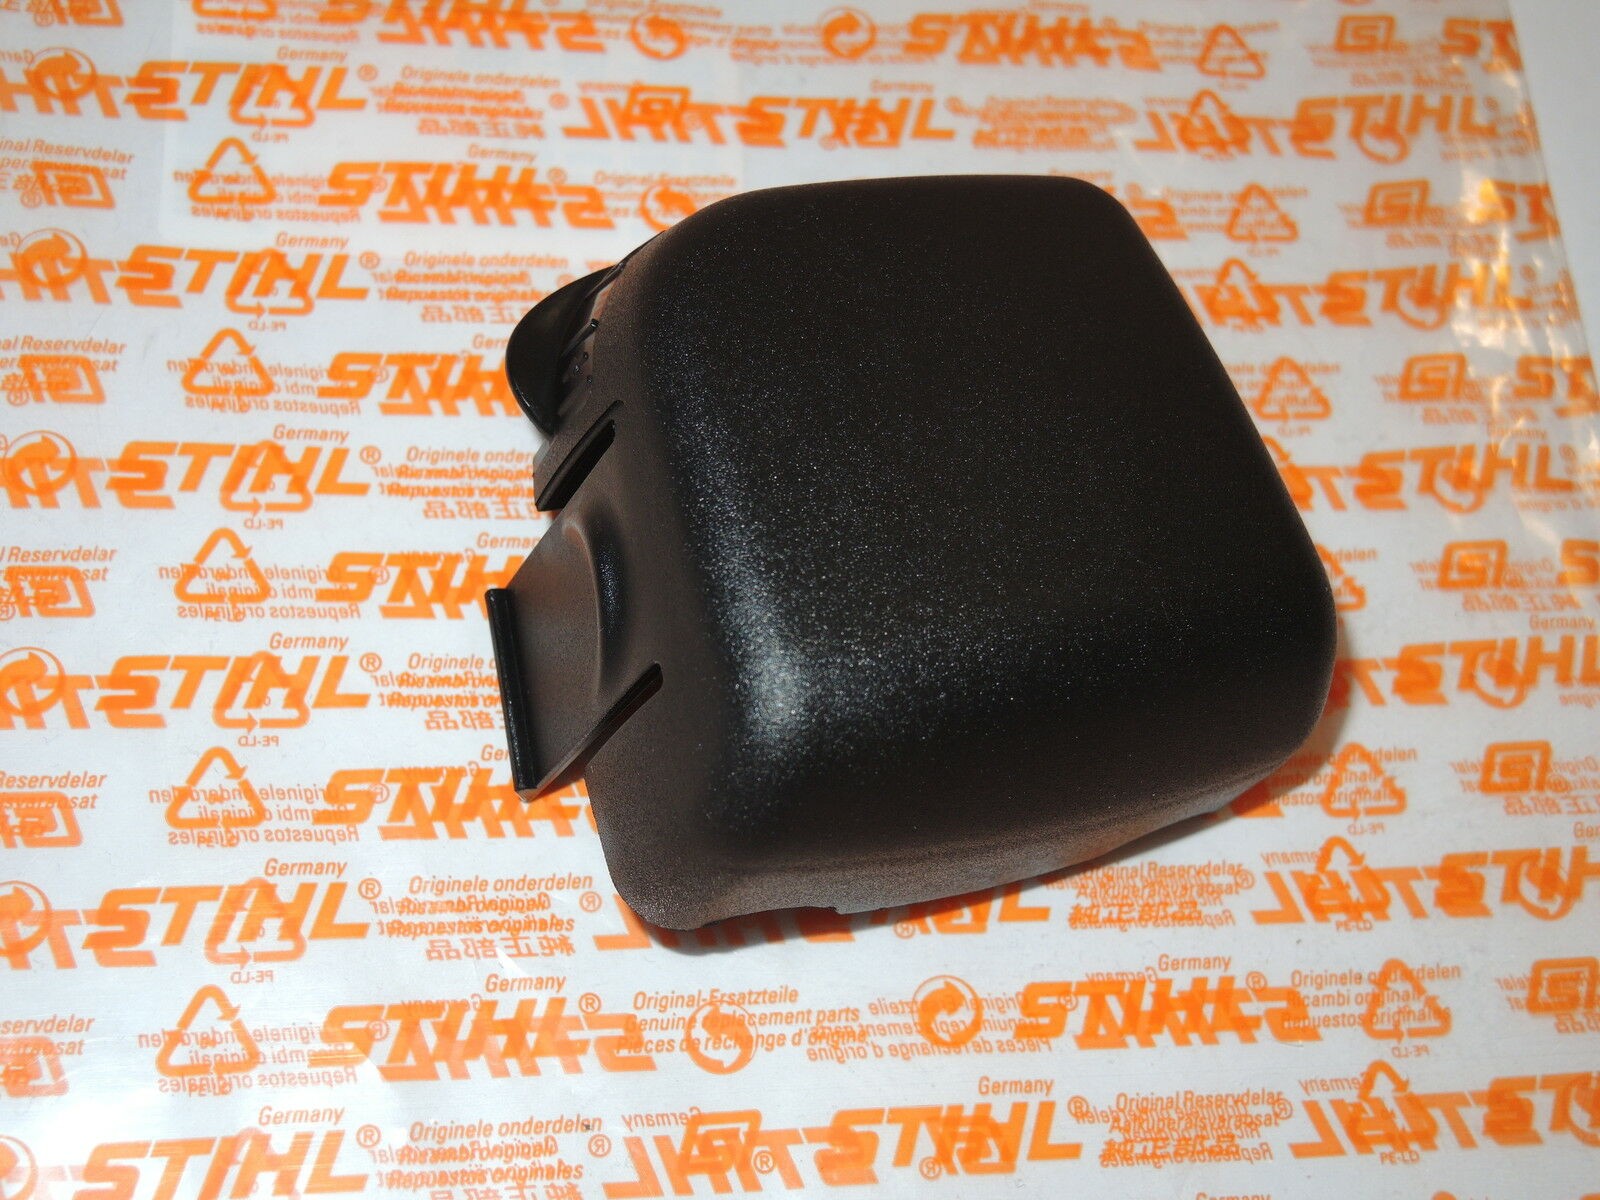 Original Luftfilter Abdeckung & Set Filter Passend für Stihl HS45 Trimmer 